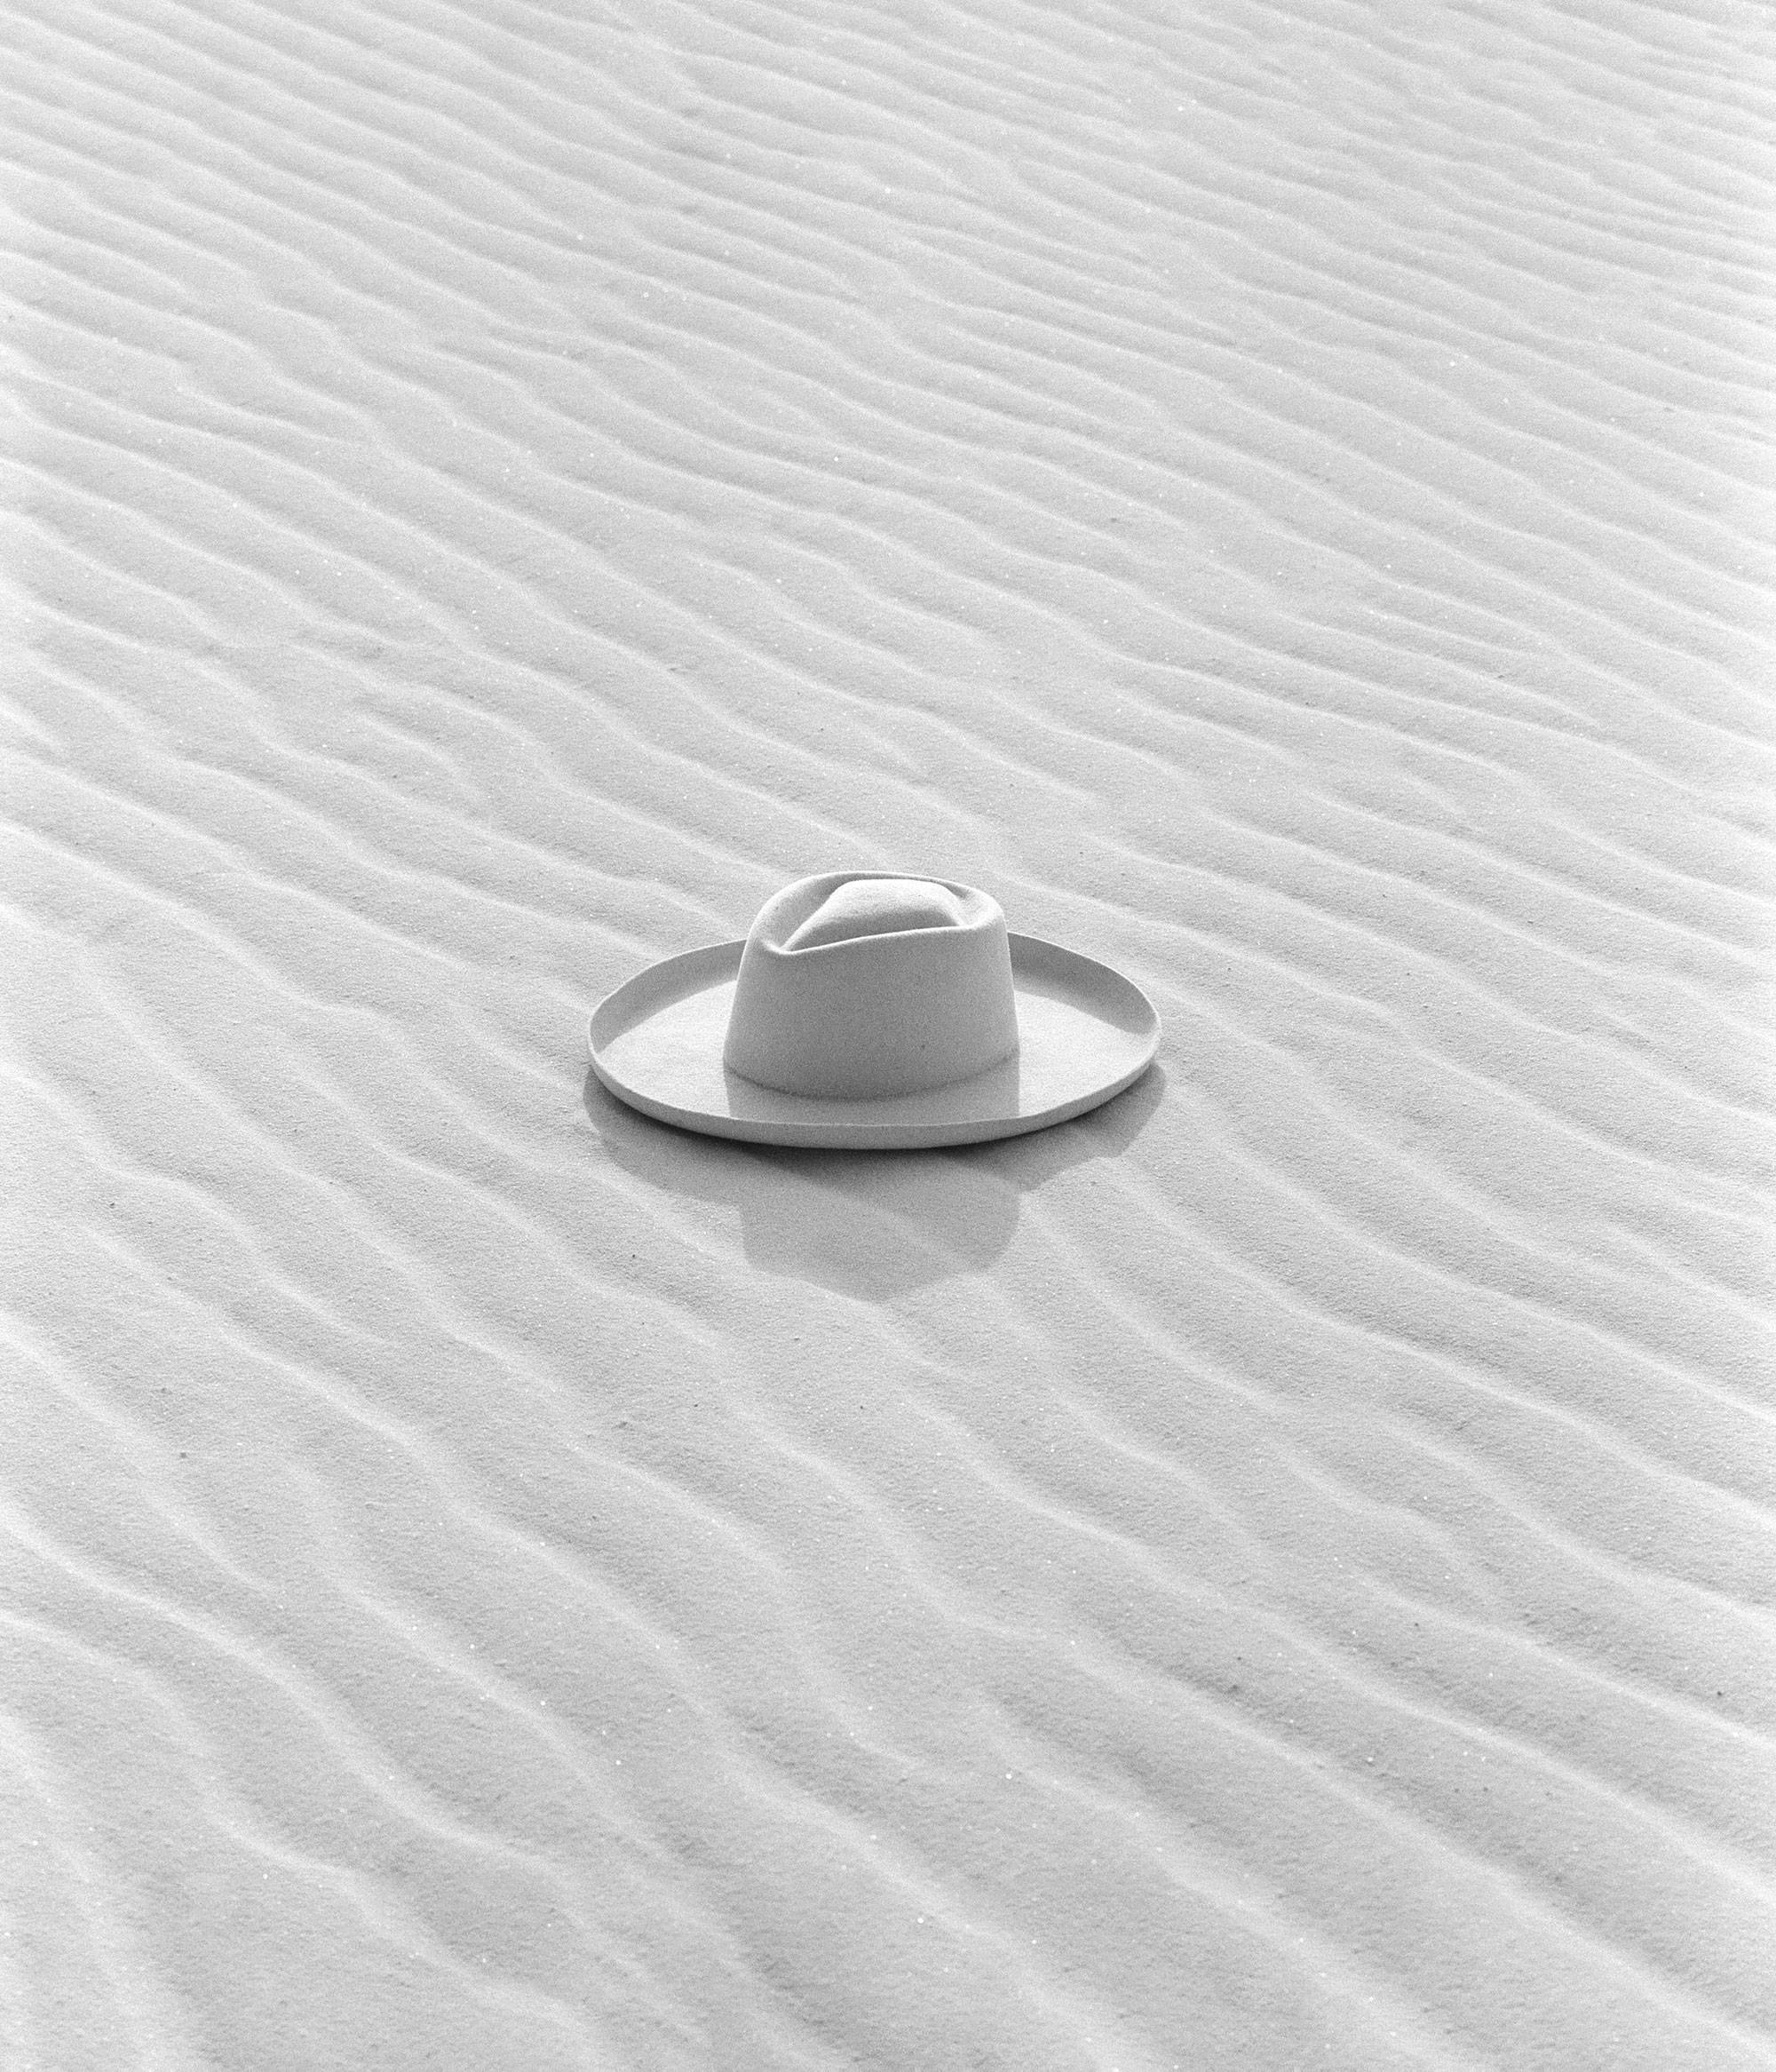 White cowboy hat sitting in wavy sand in the desert.